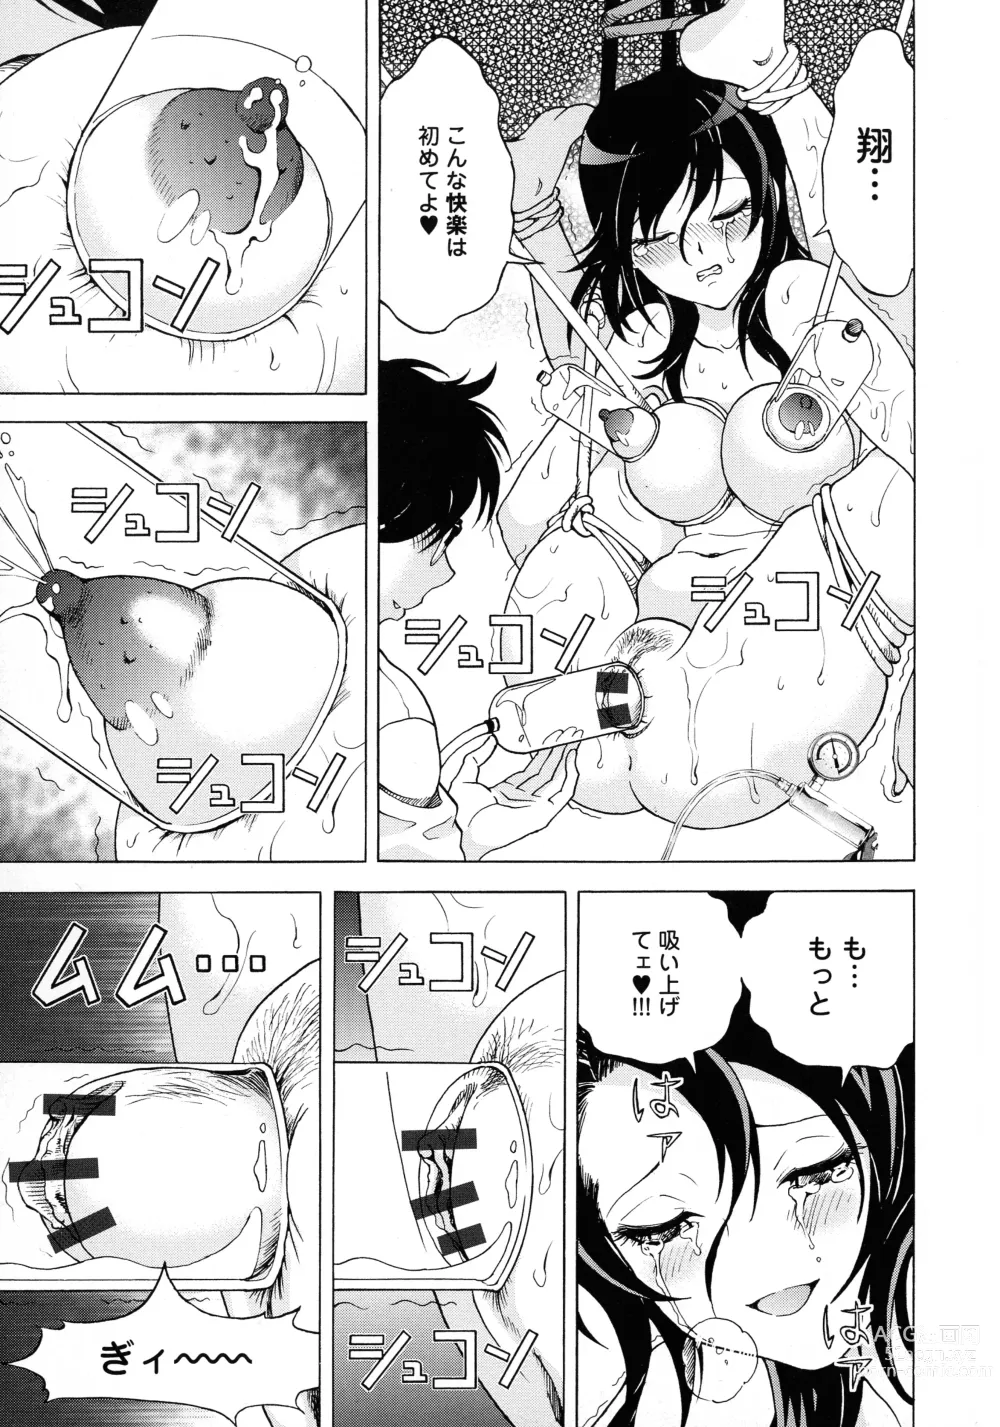 Page 184 of manga Bokinbako 2